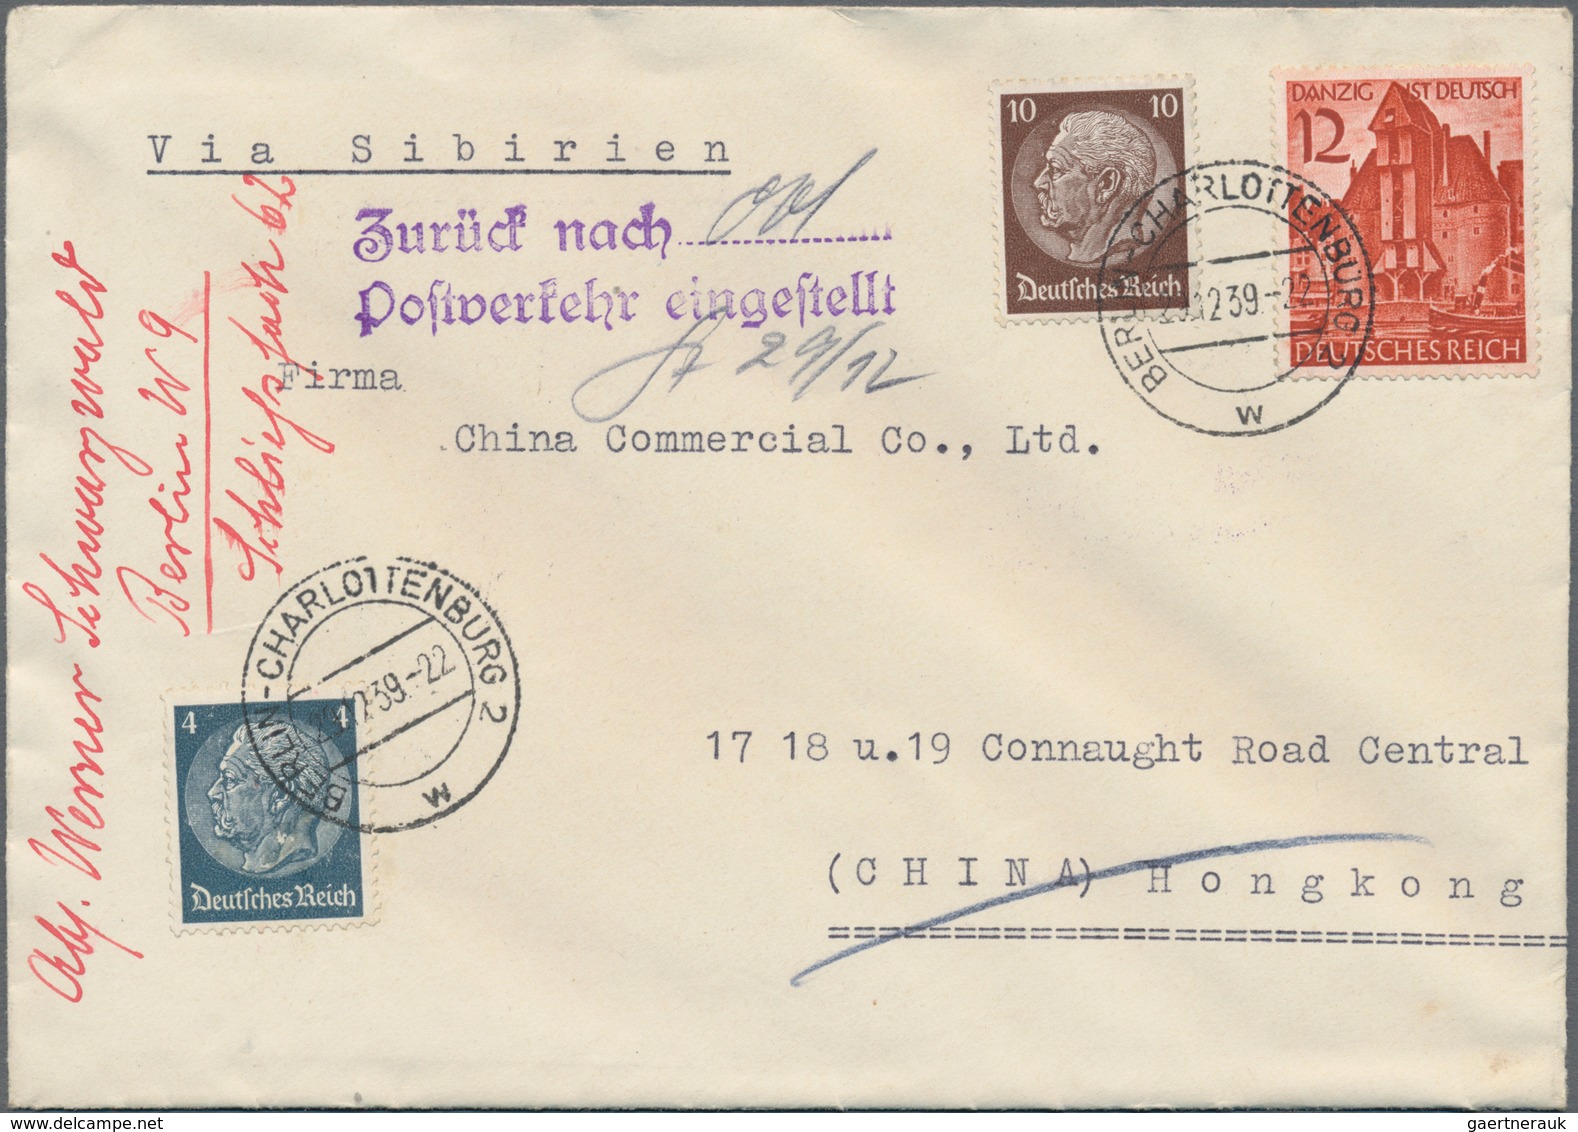 Deutsches Reich - 3. Reich: 1933/1945, sehr gehaltvoller und reichhaltiger Sammlungsbestand mit über